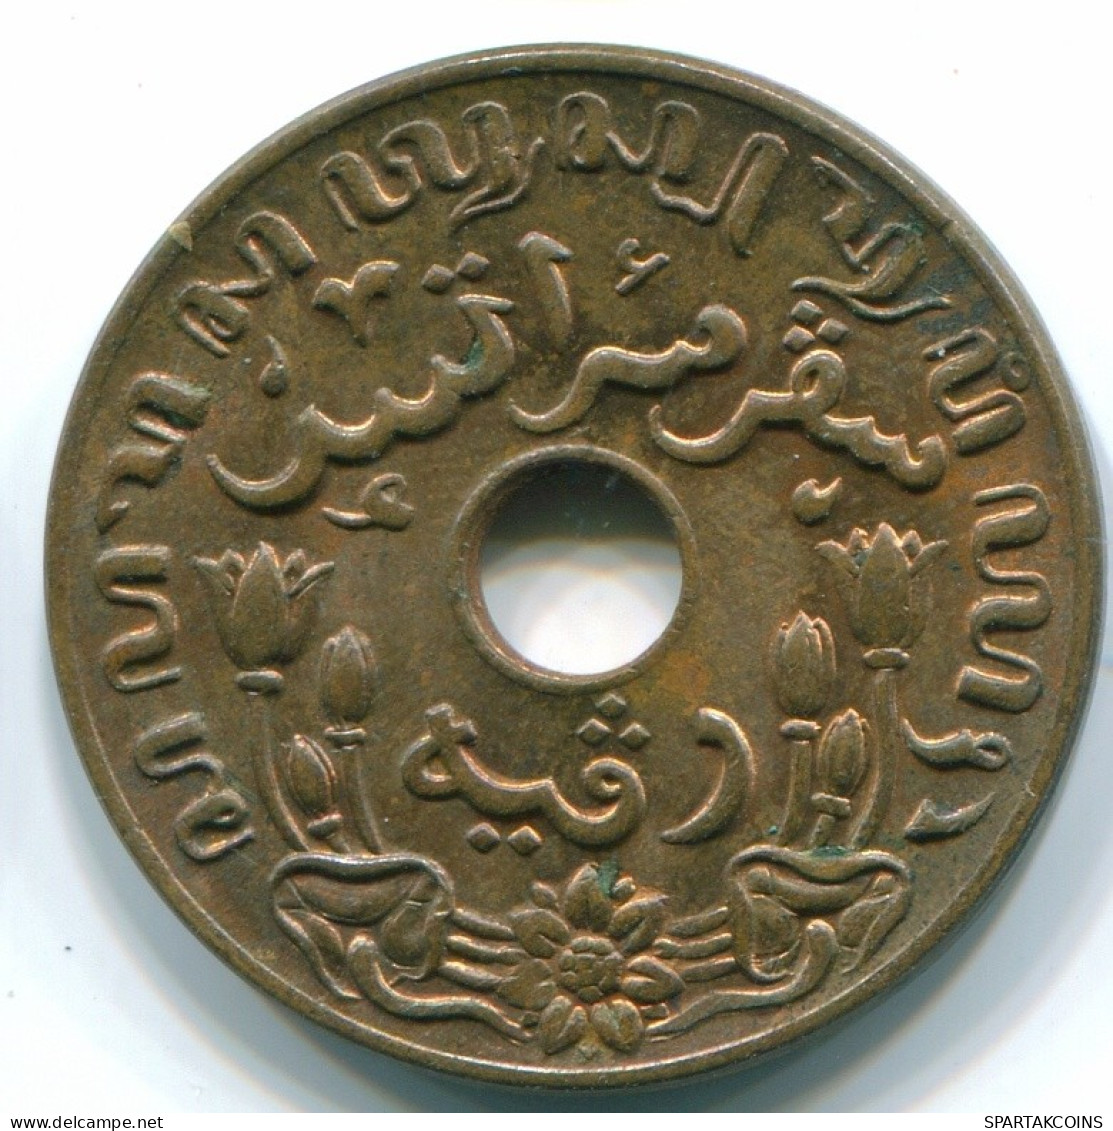 1 CENT 1942 INDES ORIENTALES NÉERLANDAISES INDONÉSIE Bronze Colonial Pièce #S10306.F.A - Nederlands-Indië